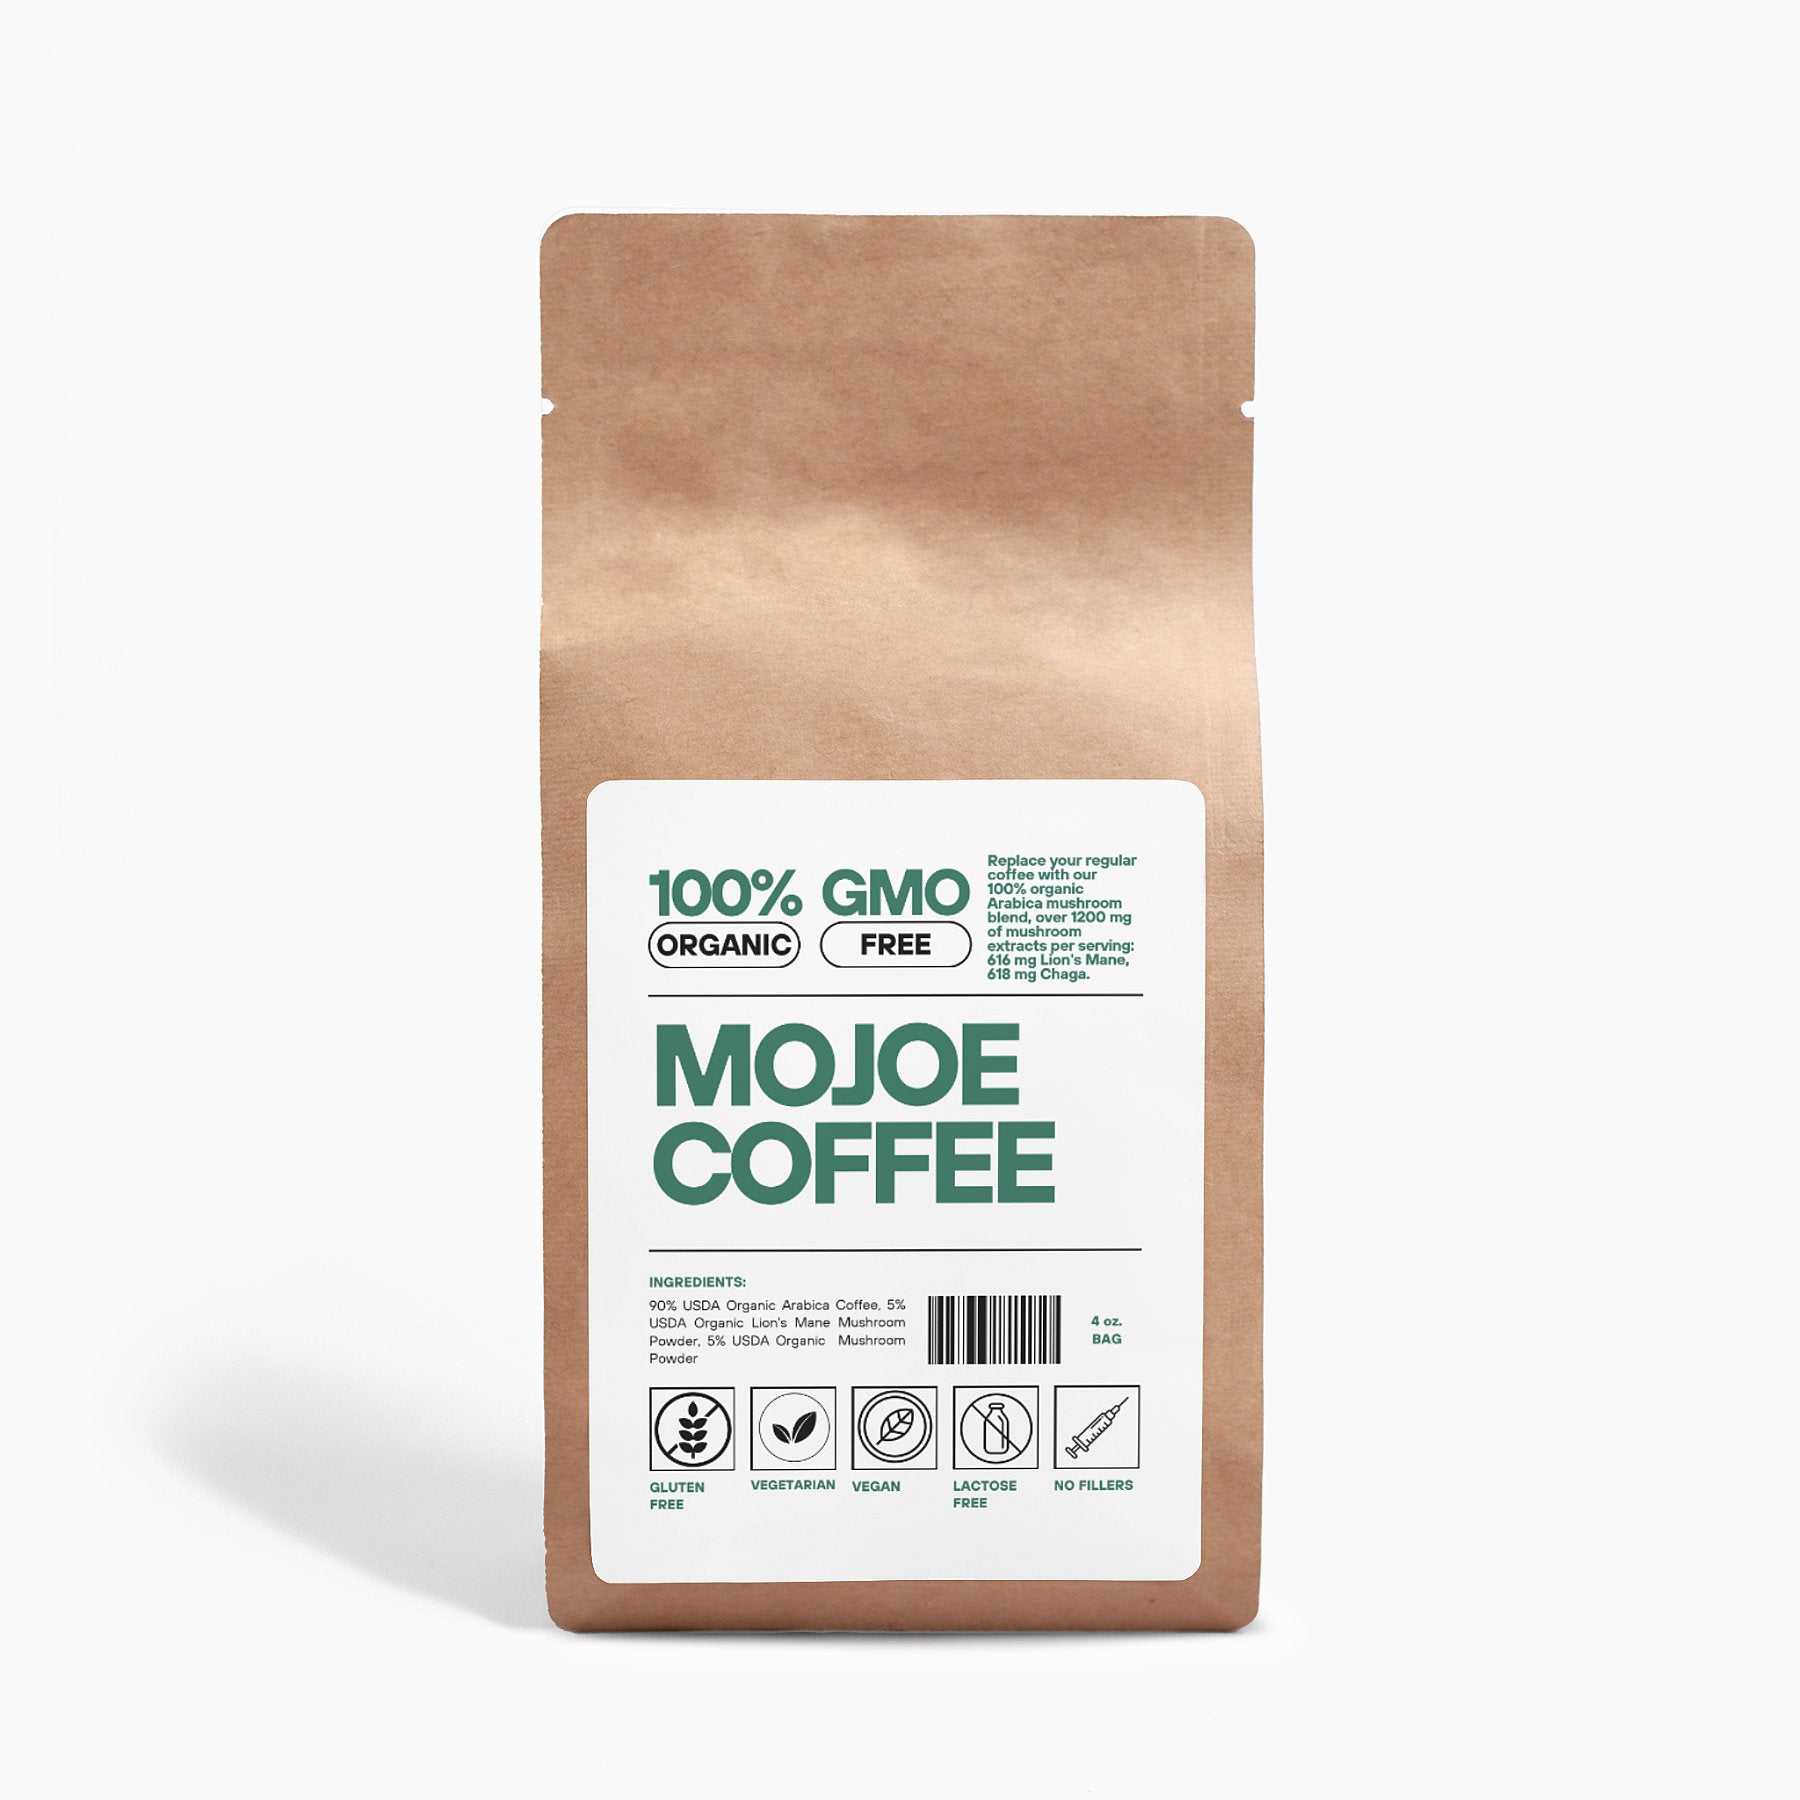 MOJOE COFFEE - Lion’s Mane, Chaga, & Coffee Blend (4oz)